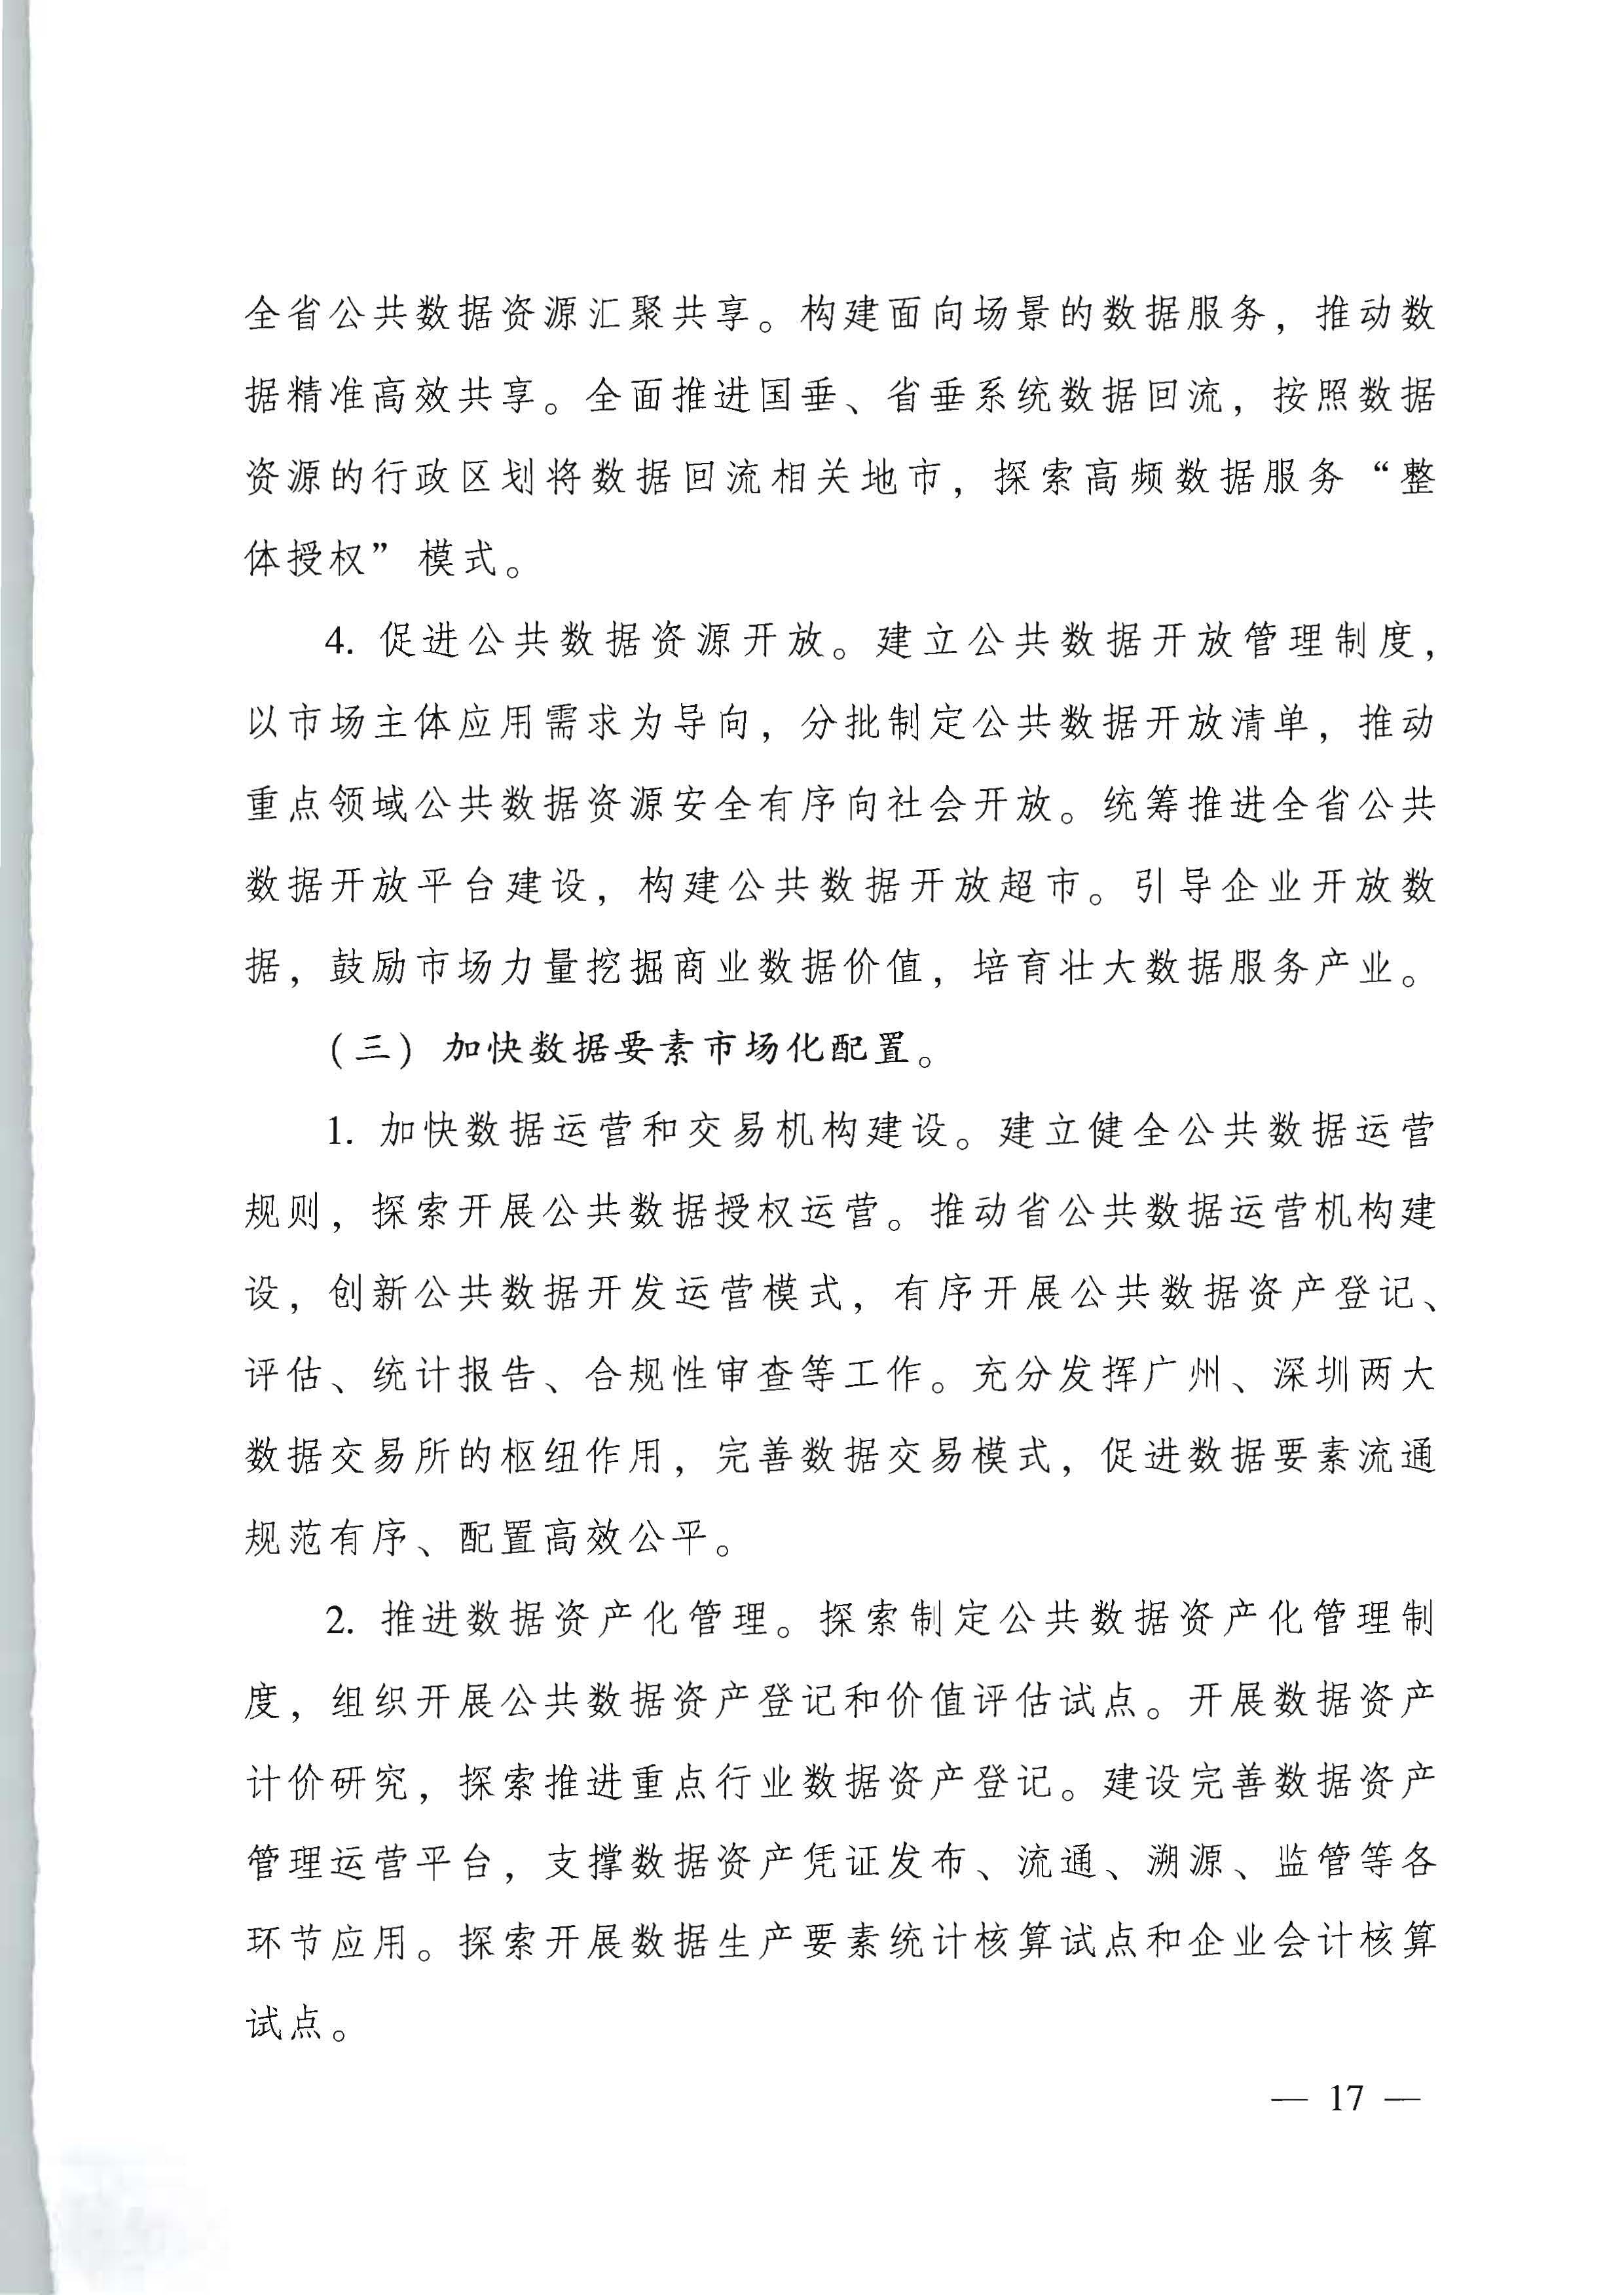 广东省人民政府关于进一步深化数字政府改革建设的实施意见_页面_17.jpg